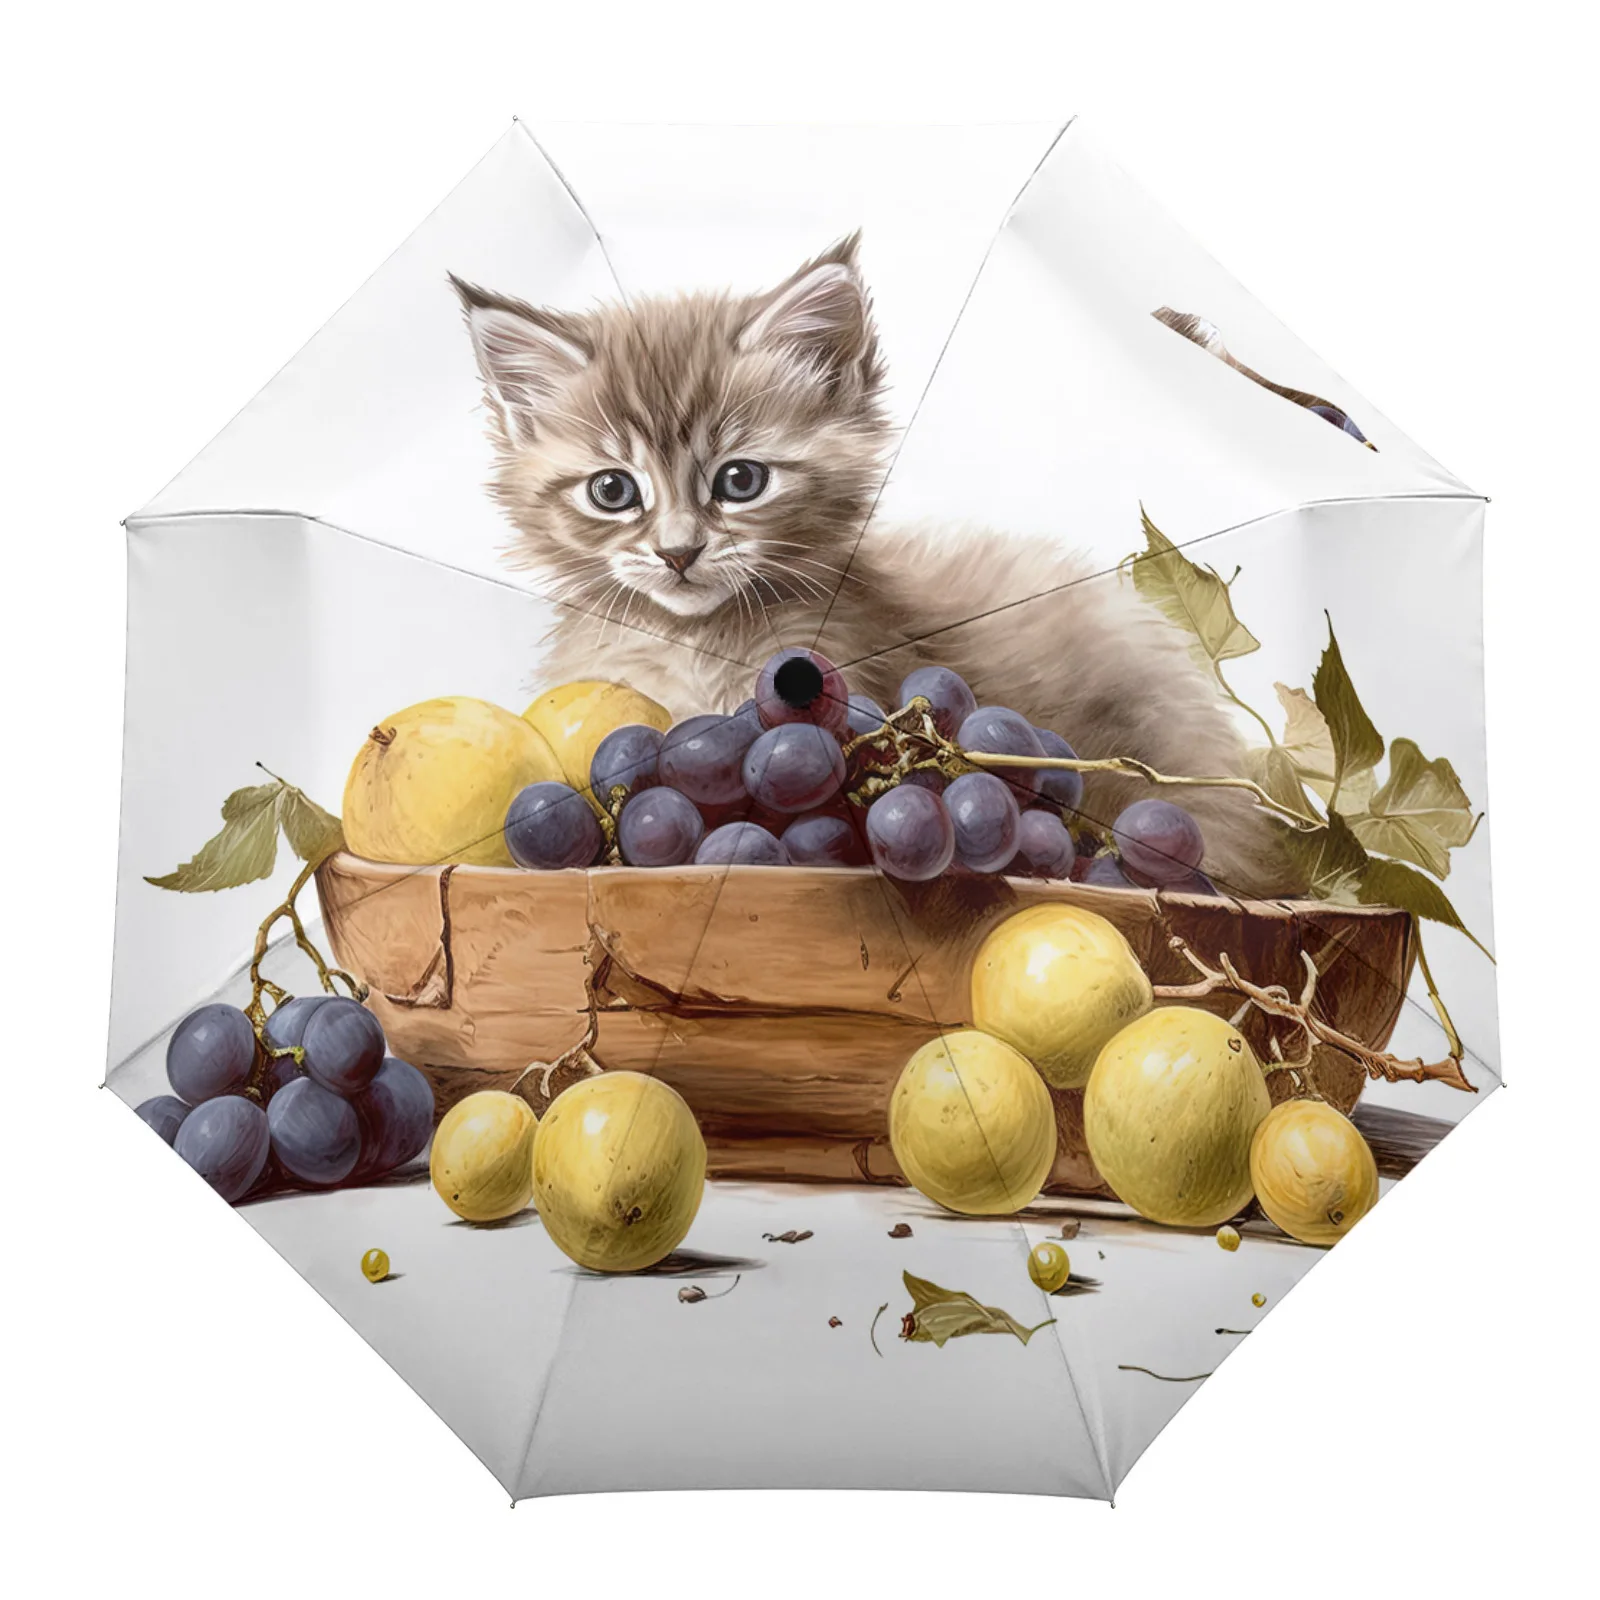 Автоматический зонт Kitten Fruit Grapes, складной зонт для путешествий, портативный зонтик, ветрозащитные зонты